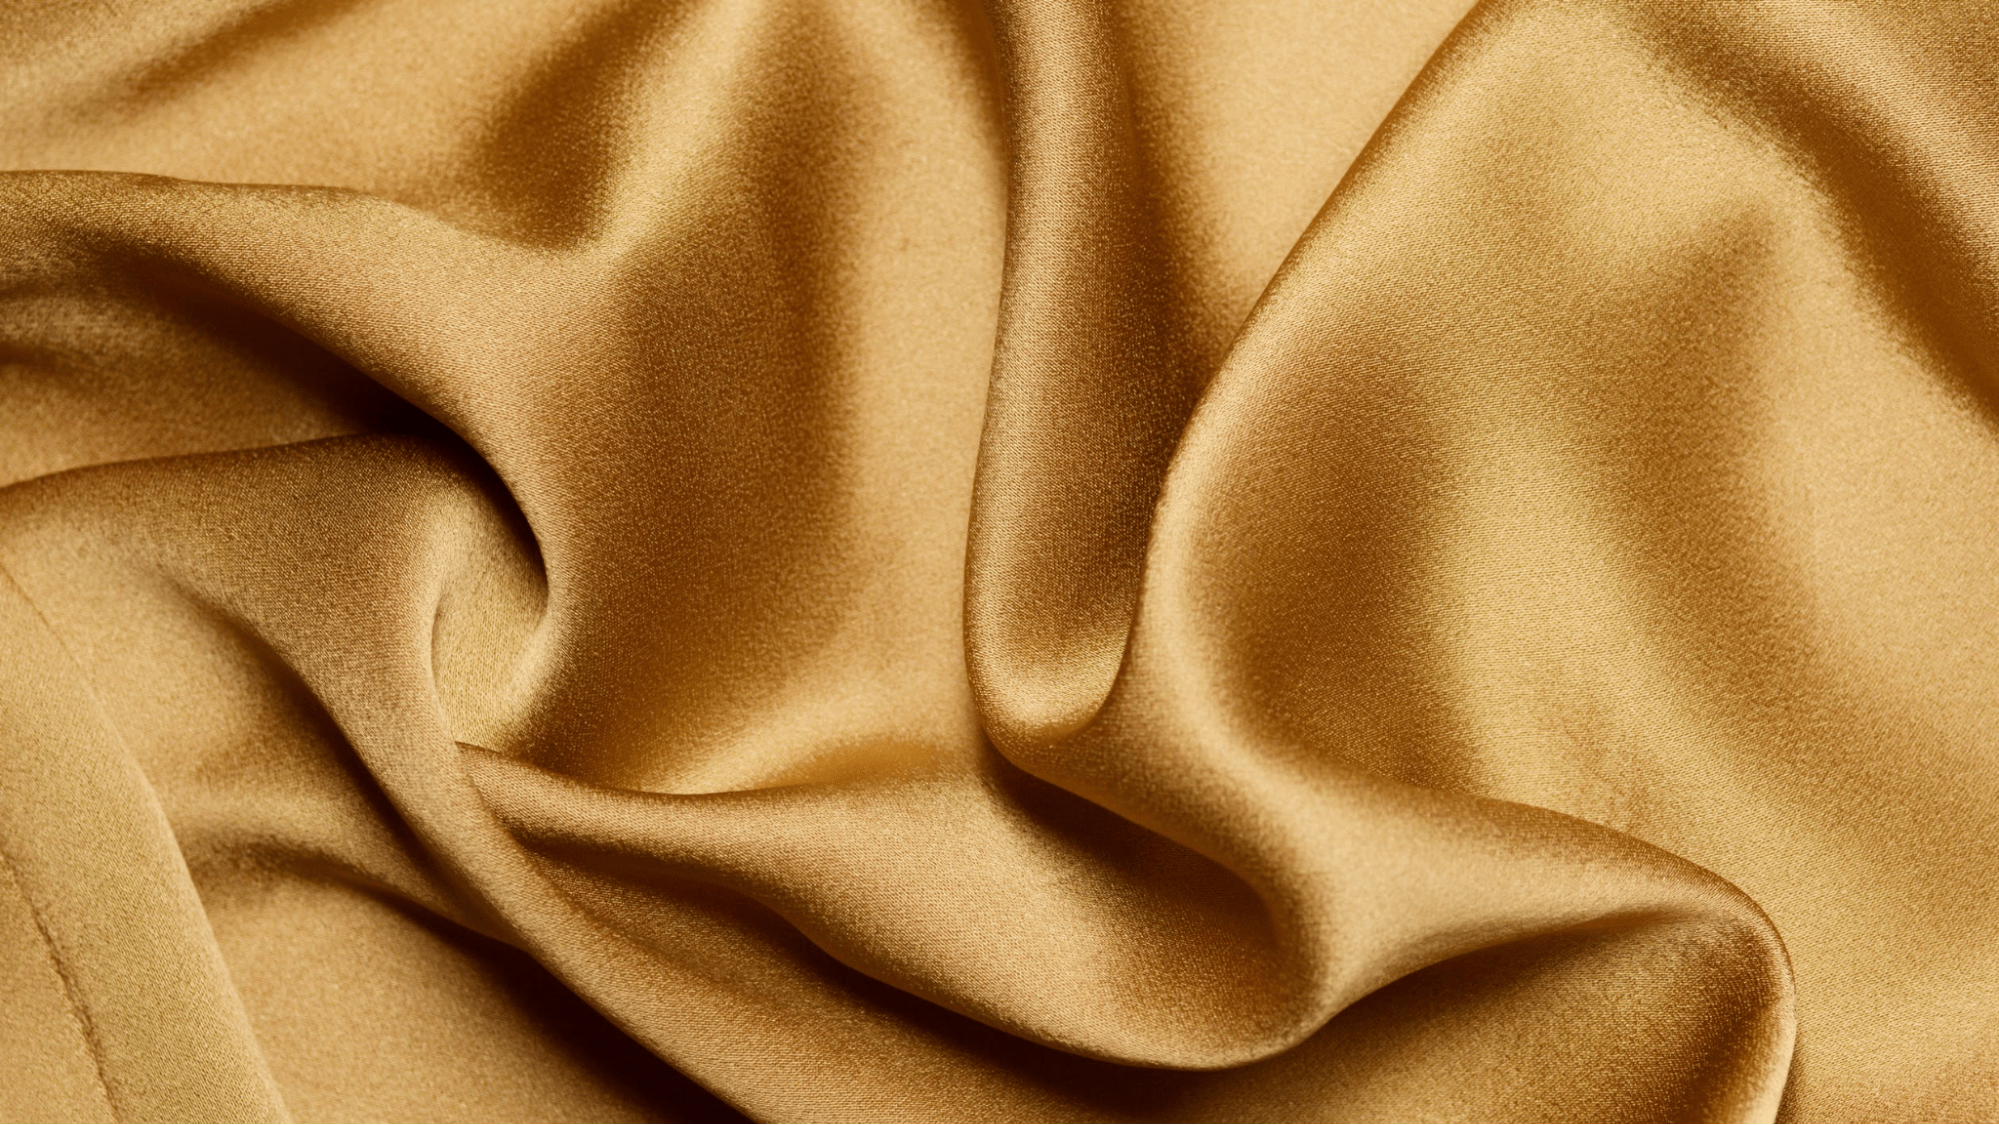 Silk bed sheet texture close up 